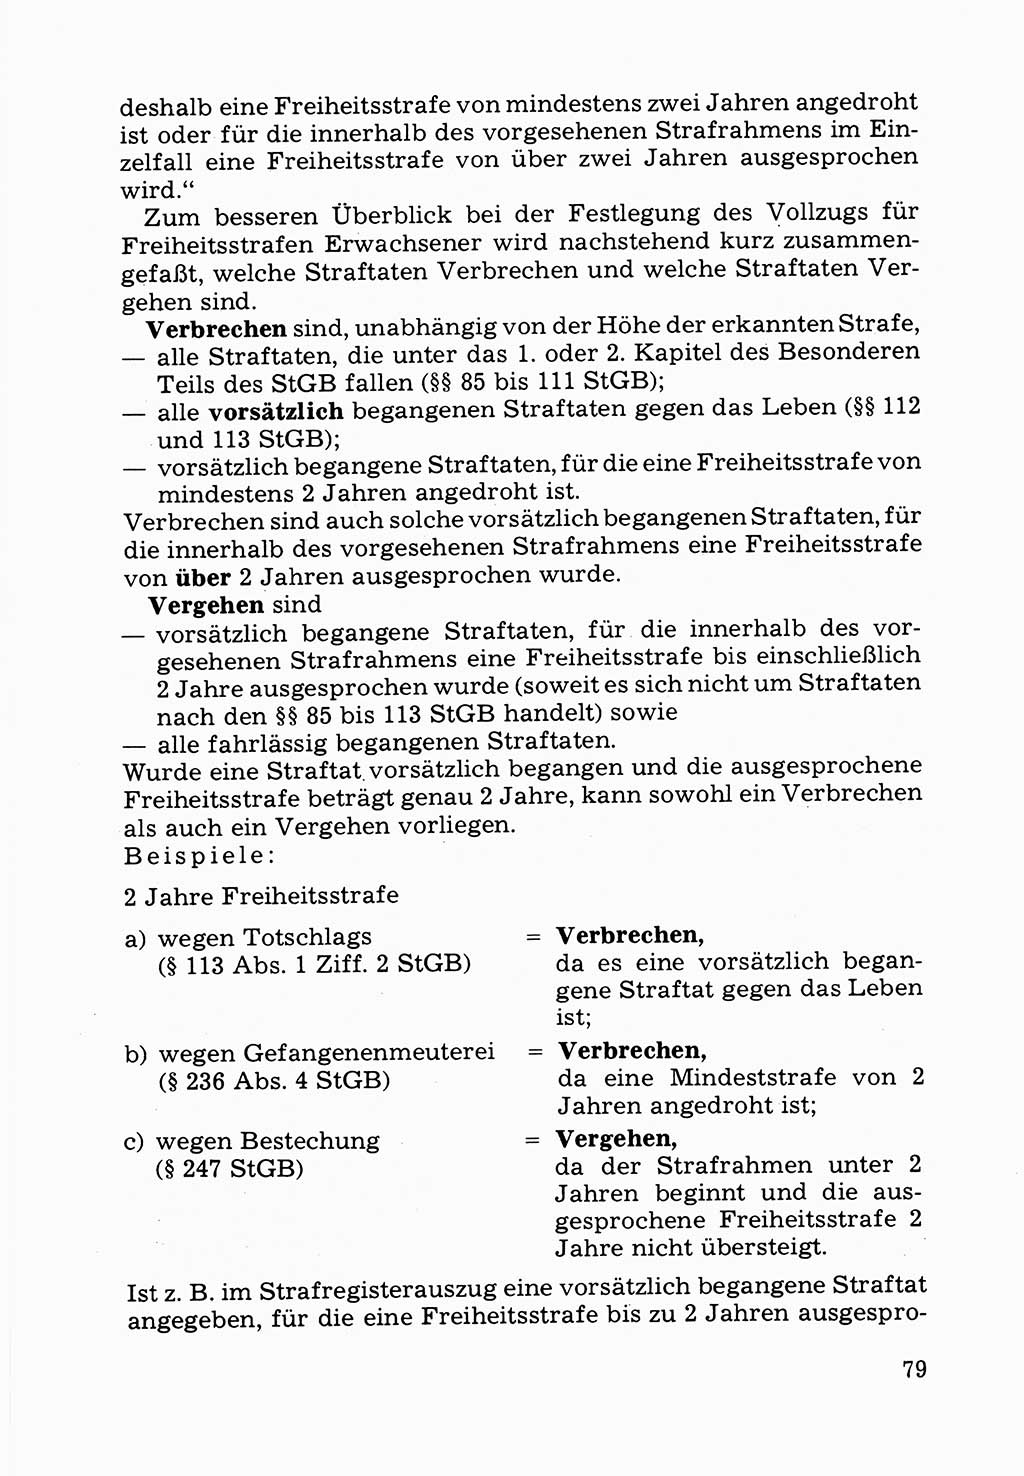 Verwaltungsmäßige Aufgaben beim Vollzug der Untersuchungshaft (U-Haft) sowie der Strafen mit Freiheitsentzug (SV) [Deutsche Demokratische Republik (DDR)] 1980, Seite 79 (Aufg. Vollz. U-Haft SV DDR 1980, S. 79)